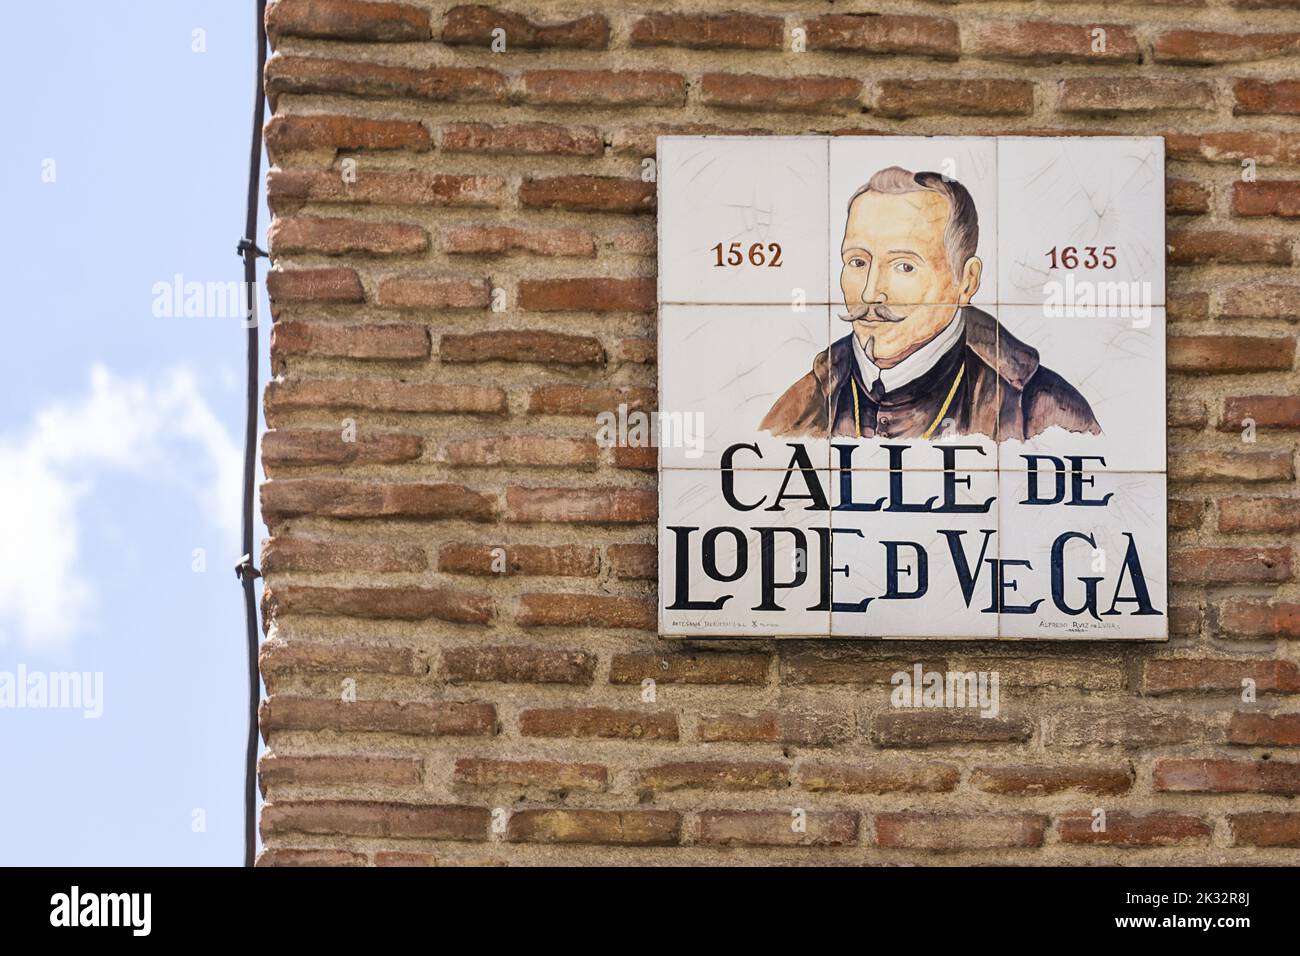 Cartel en Madrid de la calle de Lope de Vega, escritora Foto de stock